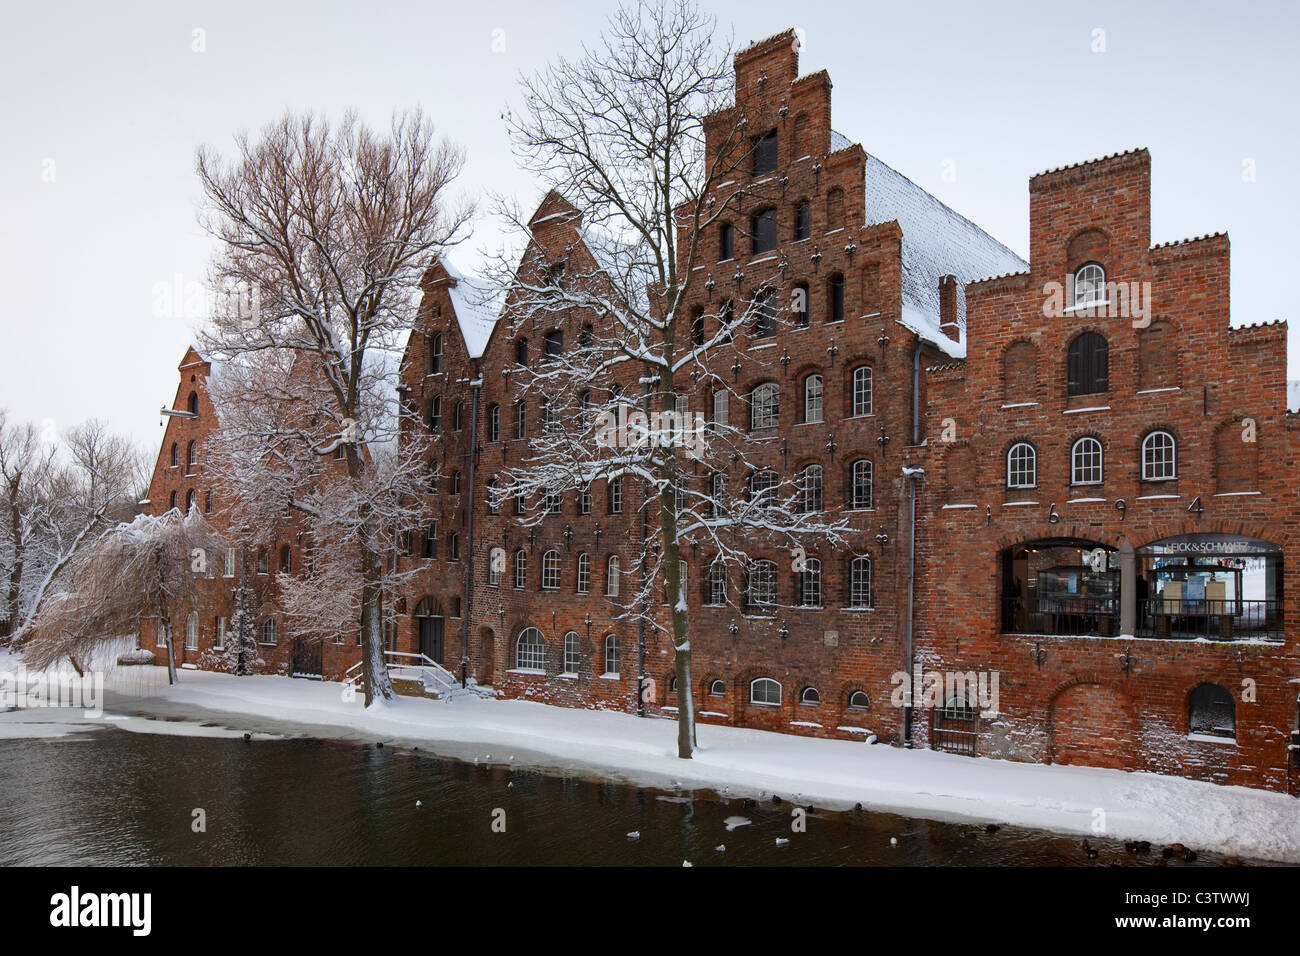 Salzspeicher, almacenes de sal histórico / Almacenes de sal en la nieve en invierno, la ciudad hanseática de Lübeck, Alemania Foto de stock